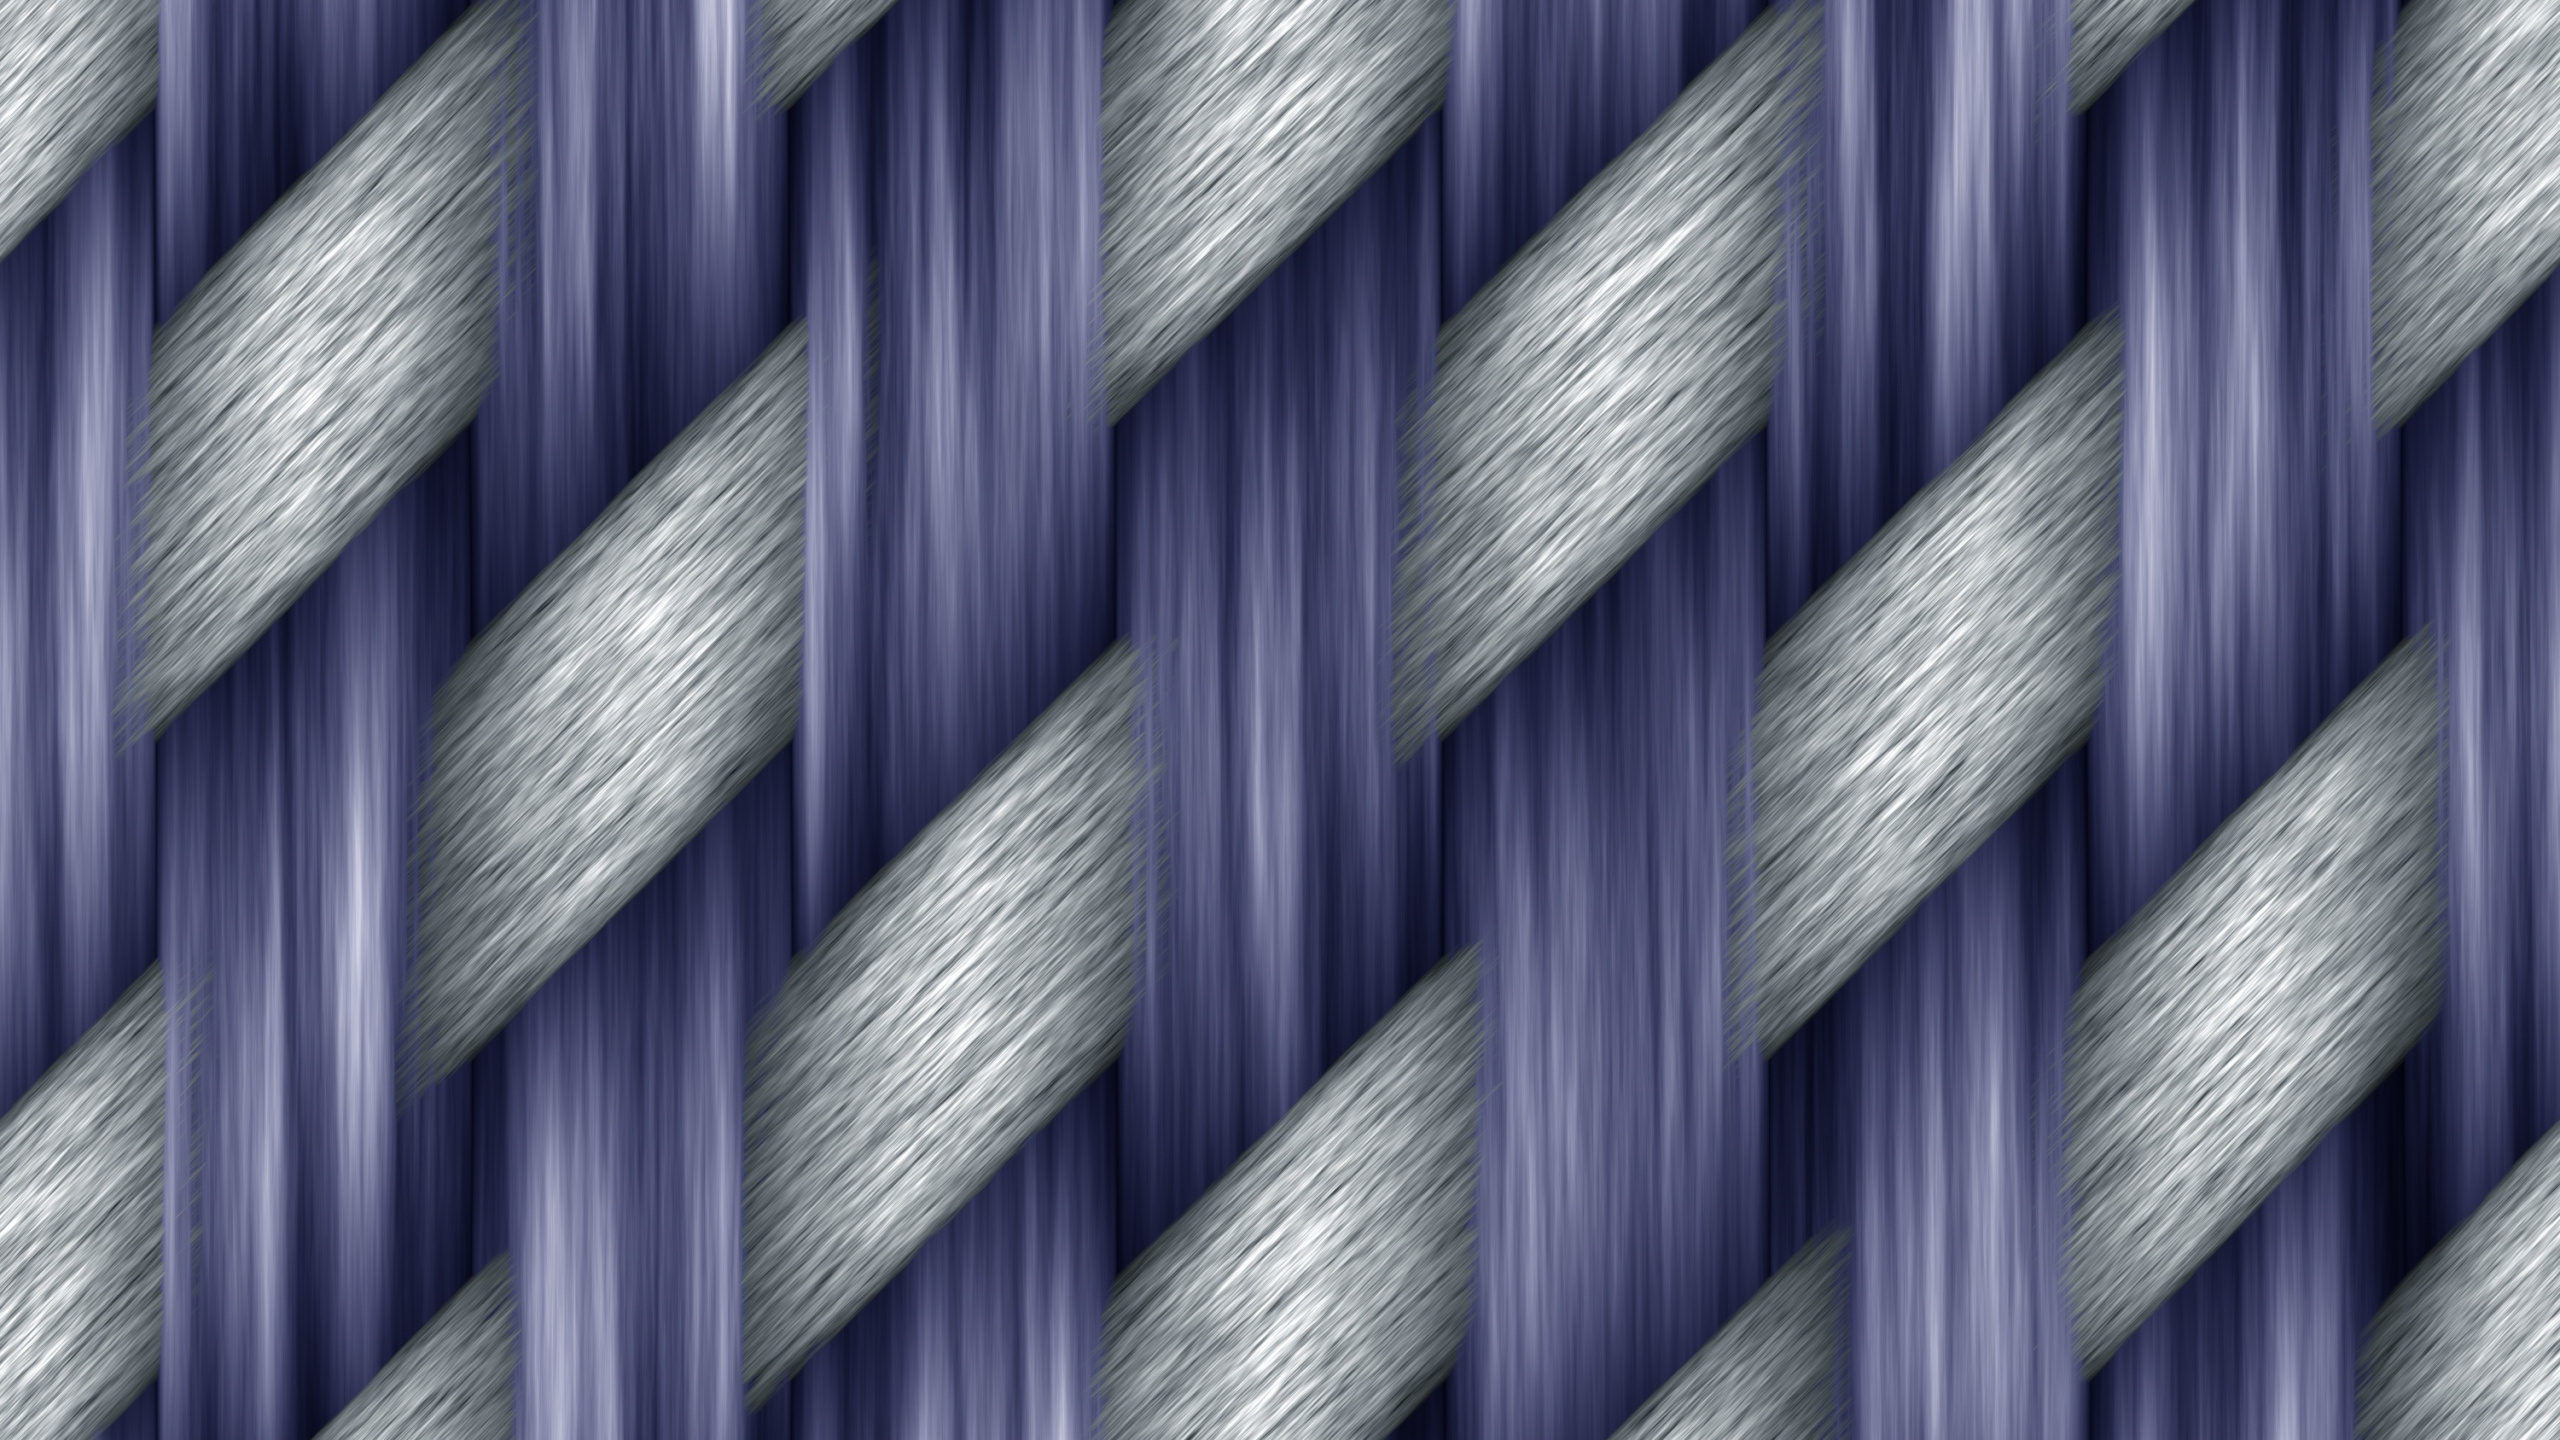 Panel de Vidrio Azul y Blanco. Wallpaper in 2560x1440 Resolution